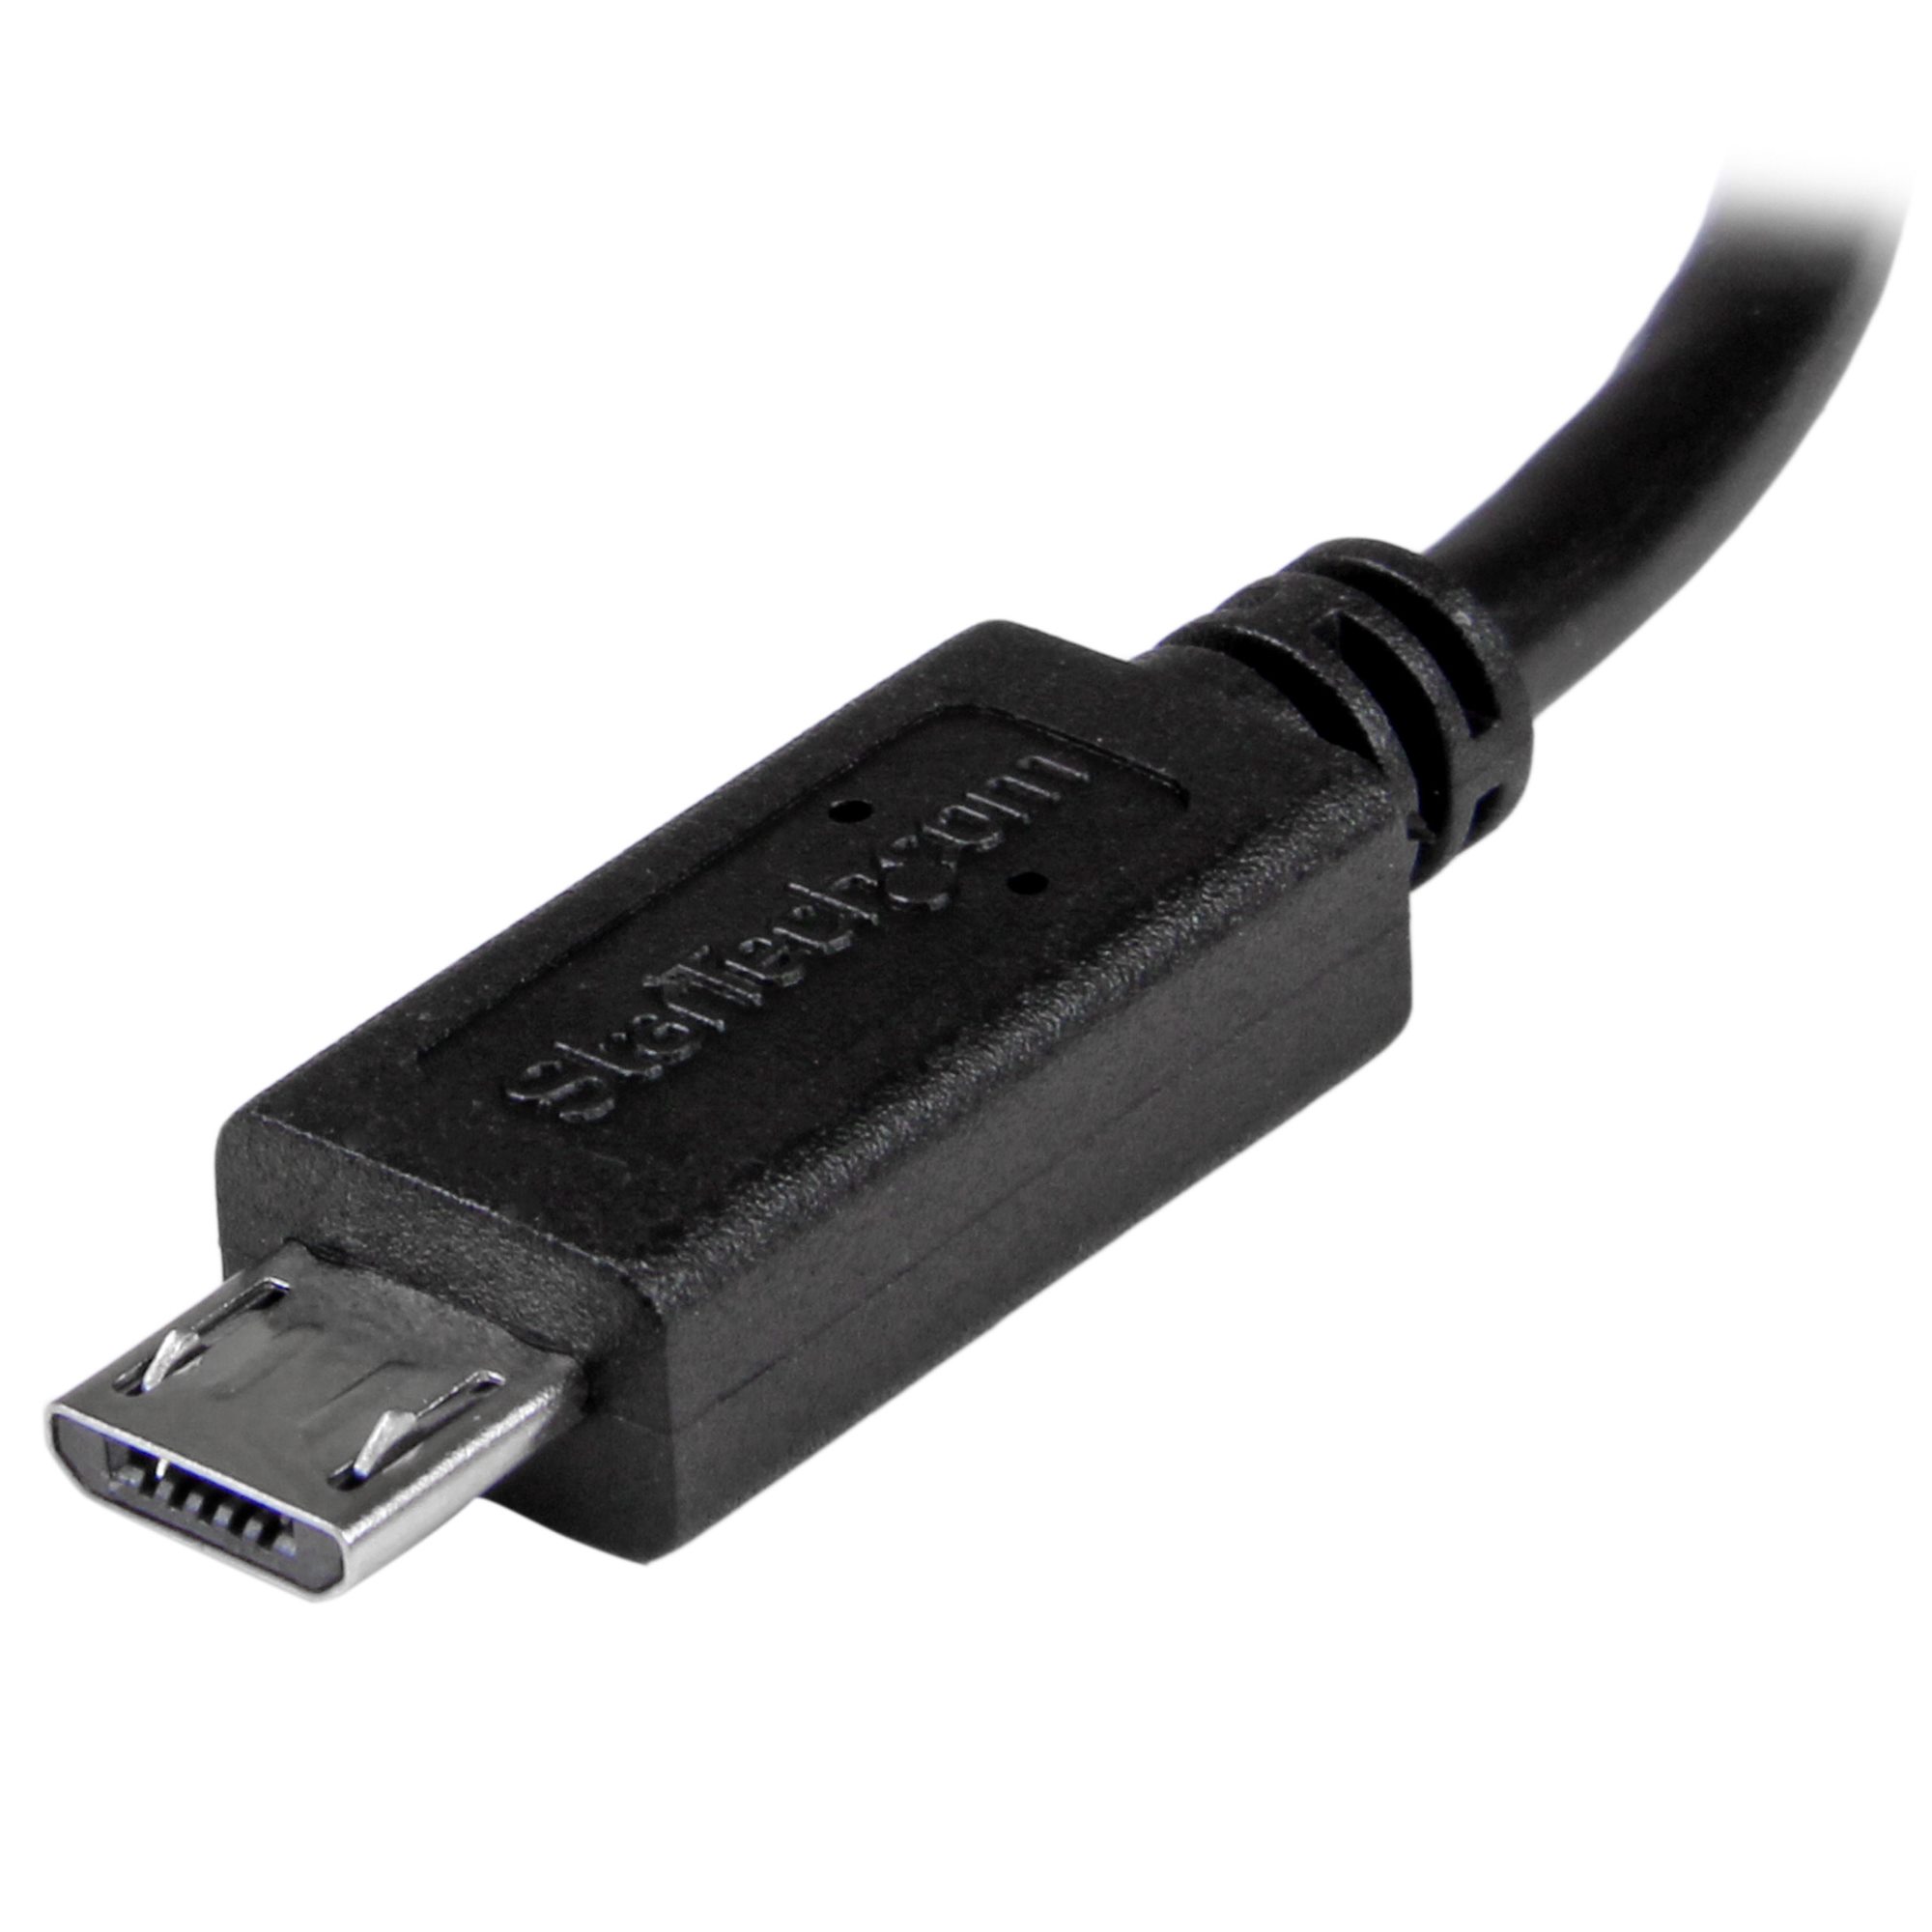 USB OTGケーブル マイクロUSB - ミニUSB オス/オス 20cm - USBアダプタ(USB 2.0) | 日本